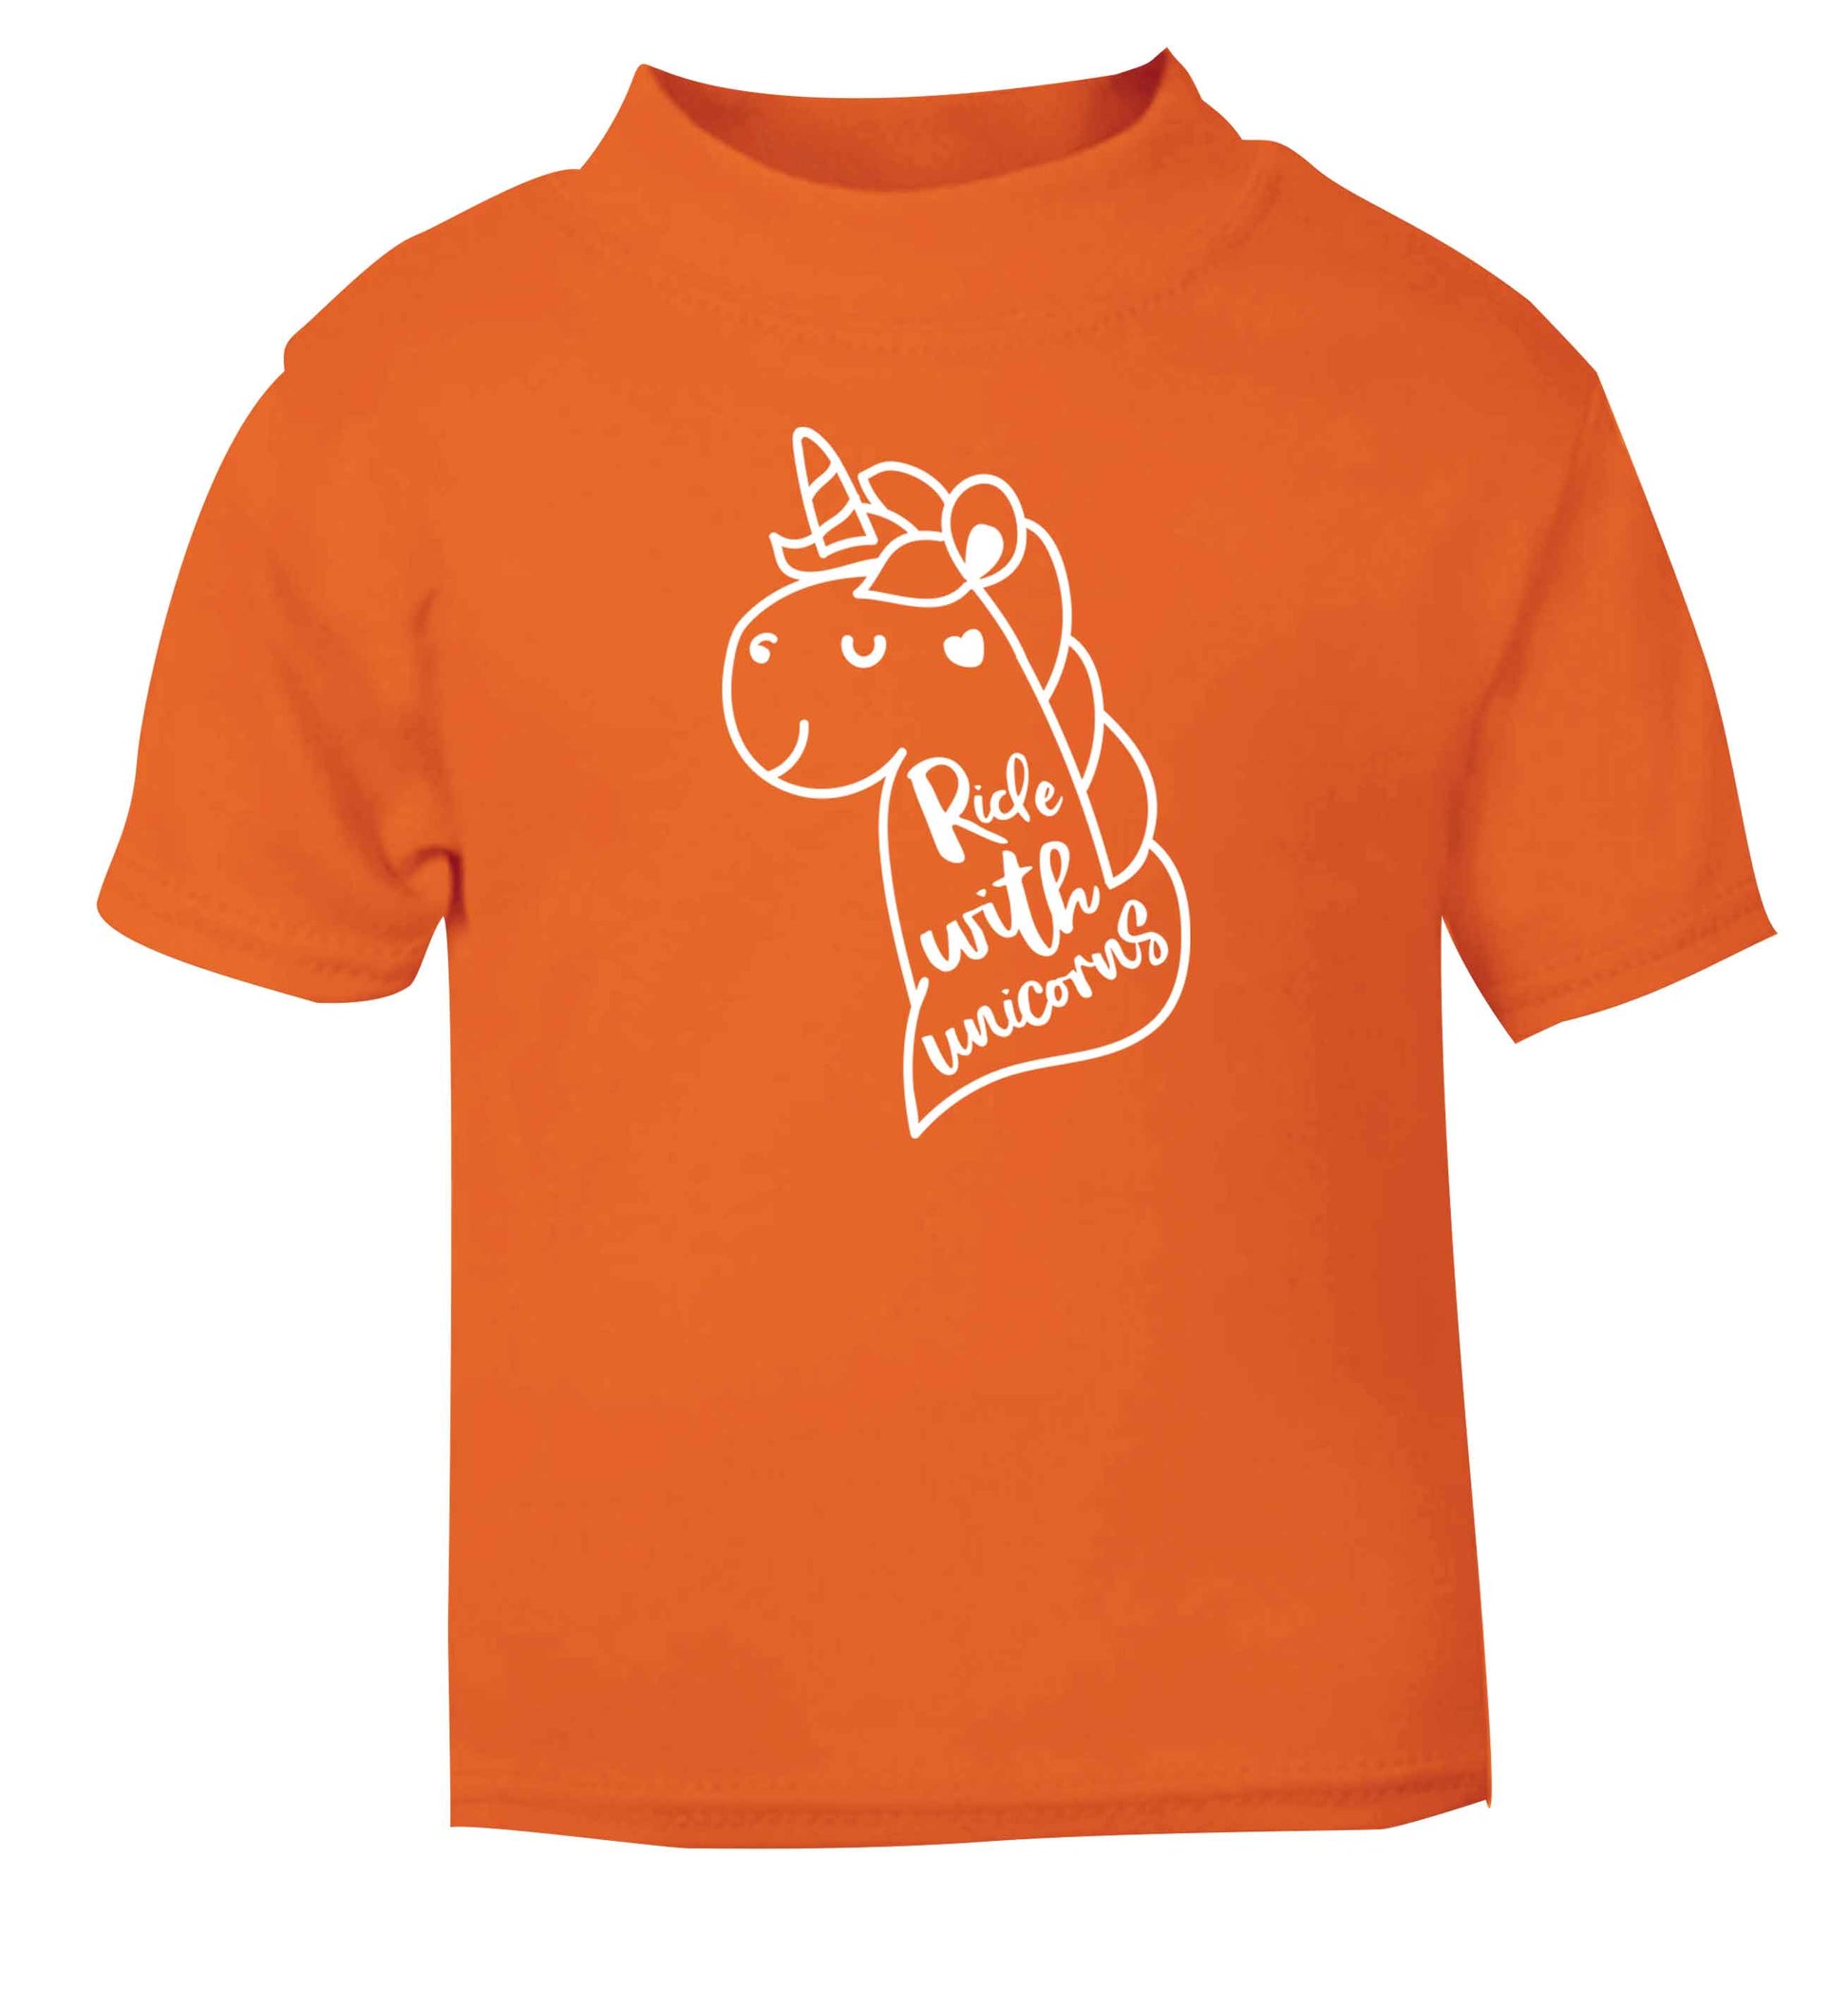 Ride with unicorns orange Baby Toddler Tshirt 2 Years